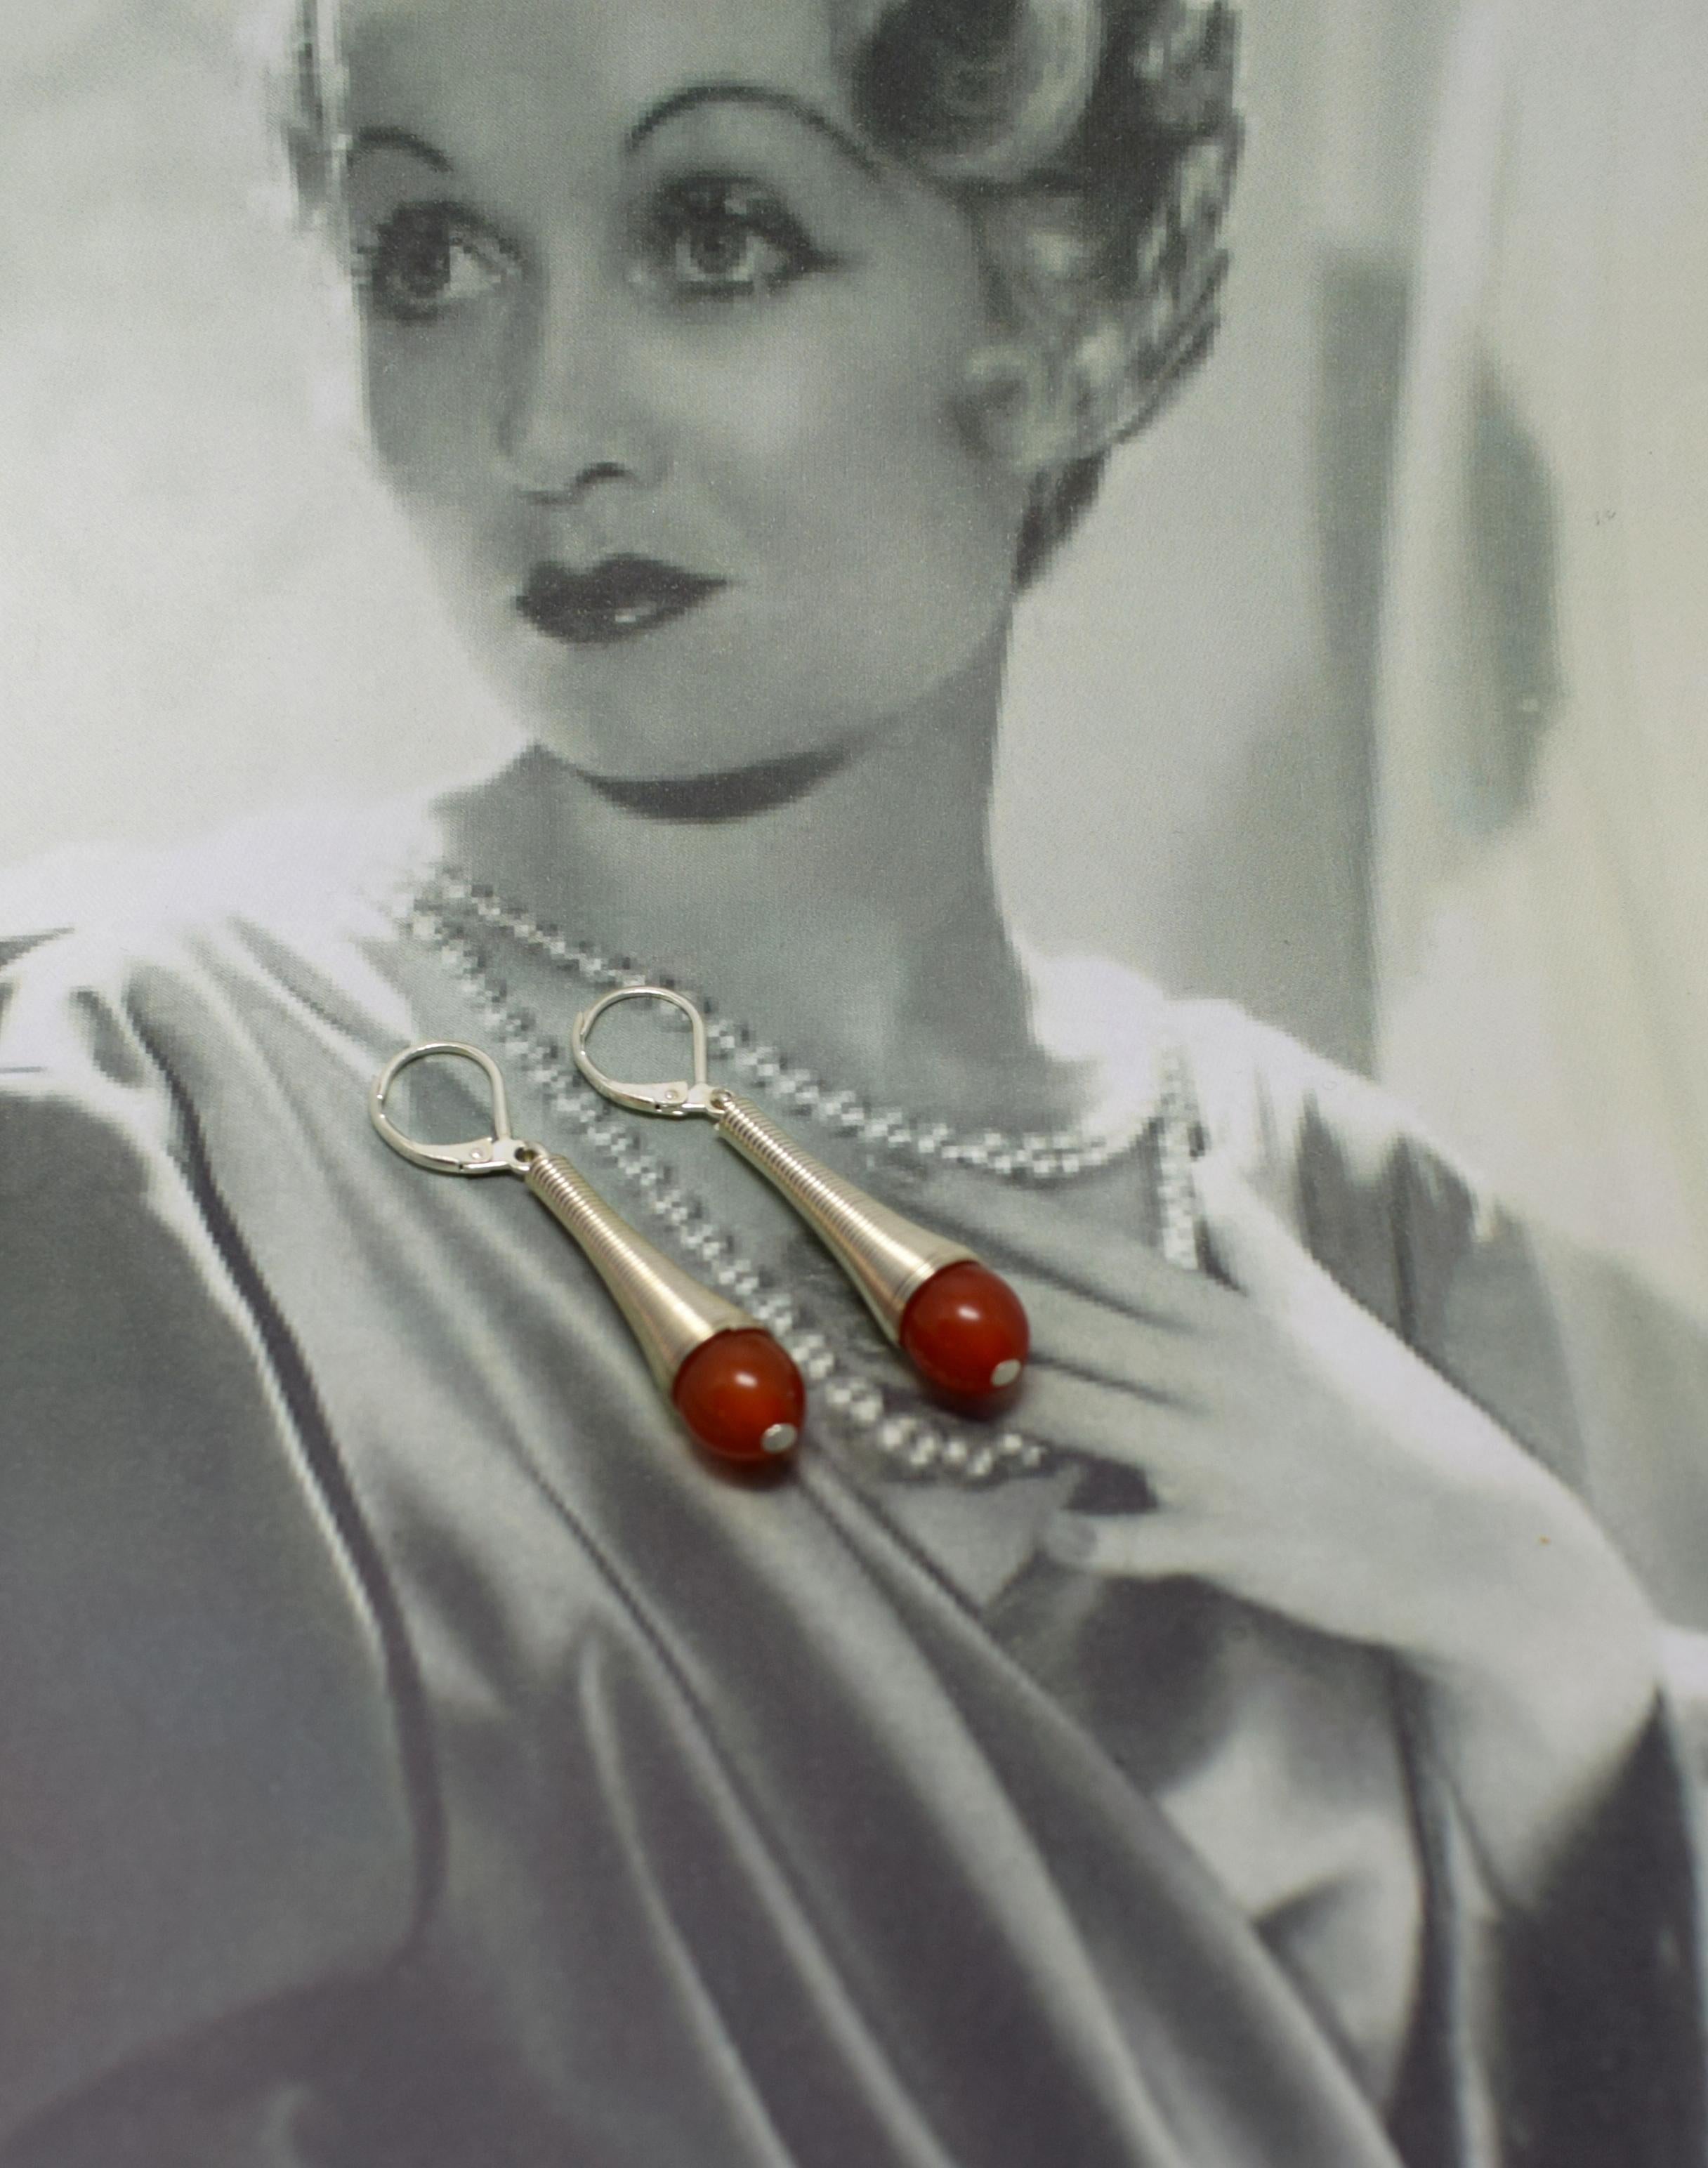 Boucles d'oreilles modernistes Art déco des années 1930, fabuleusement élégantes. La bakélite phénolique est de couleur rouge tomate. Le métal chromé est brillant et net, sans ternissement ni piqûre. Belle longueur au porter et idéal pour la journée